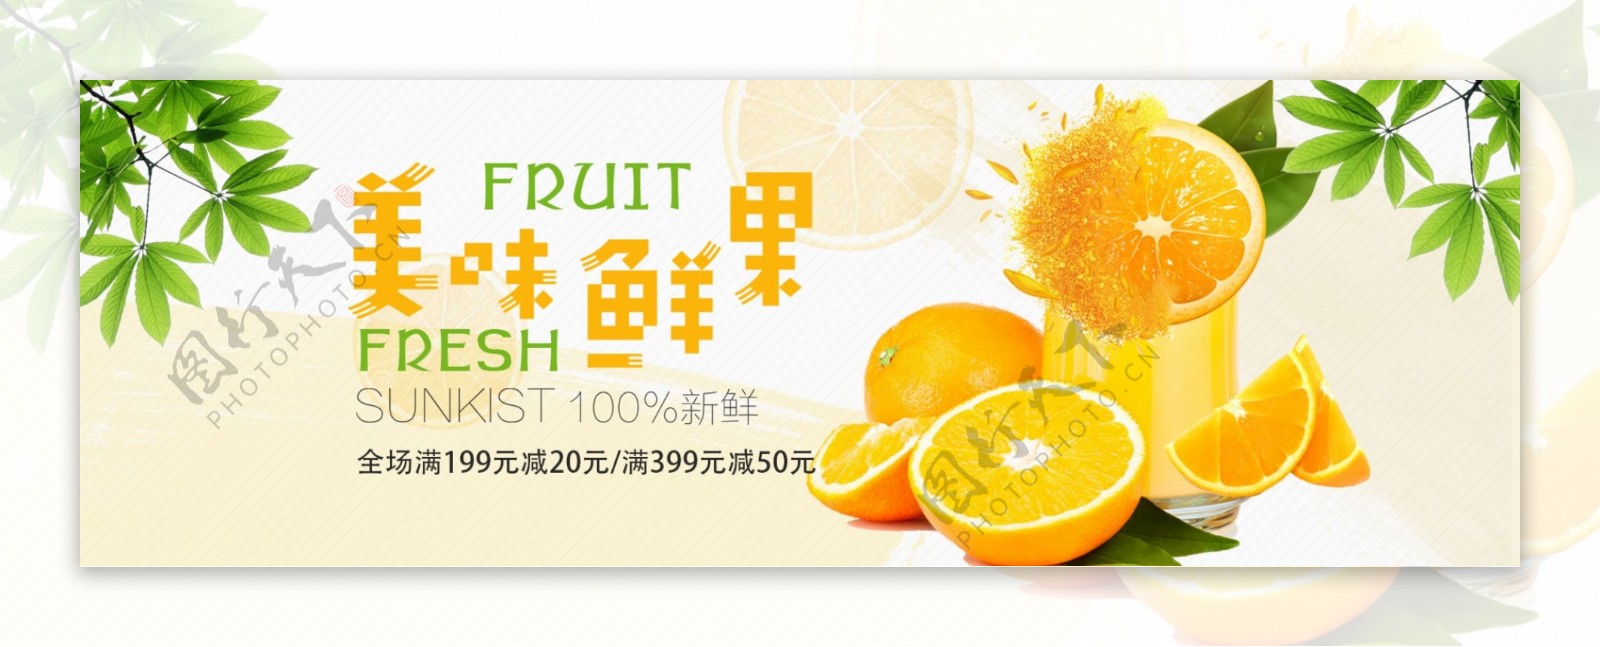 黄色清新绿叶鲜橙水果食品淘宝banner